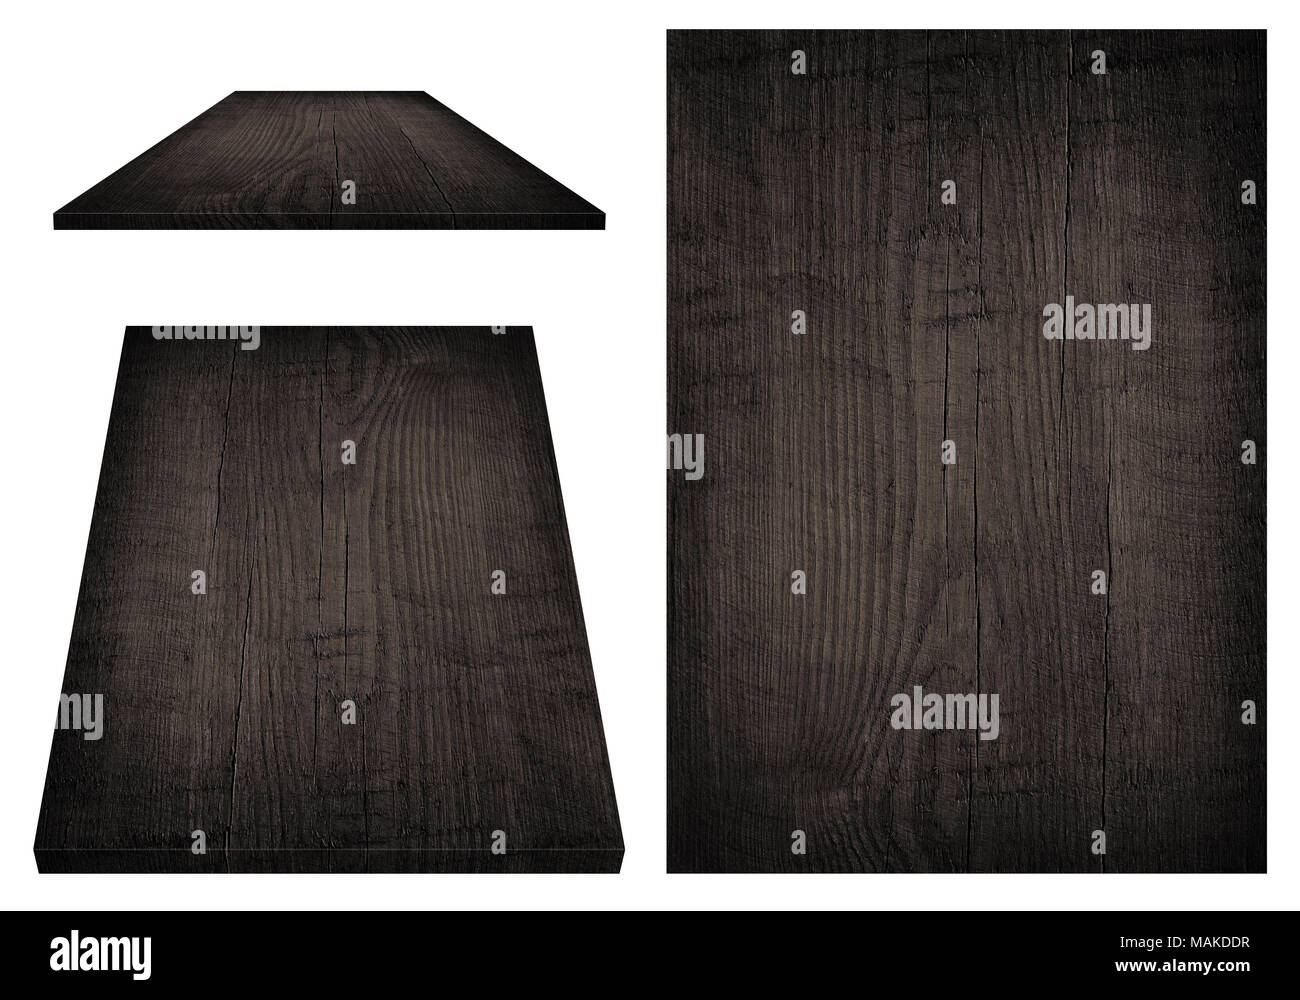 Conseil en bois noir, table, la surface au sol, la texture. Les objets sont isolé sur fond blanc Banque D'Images